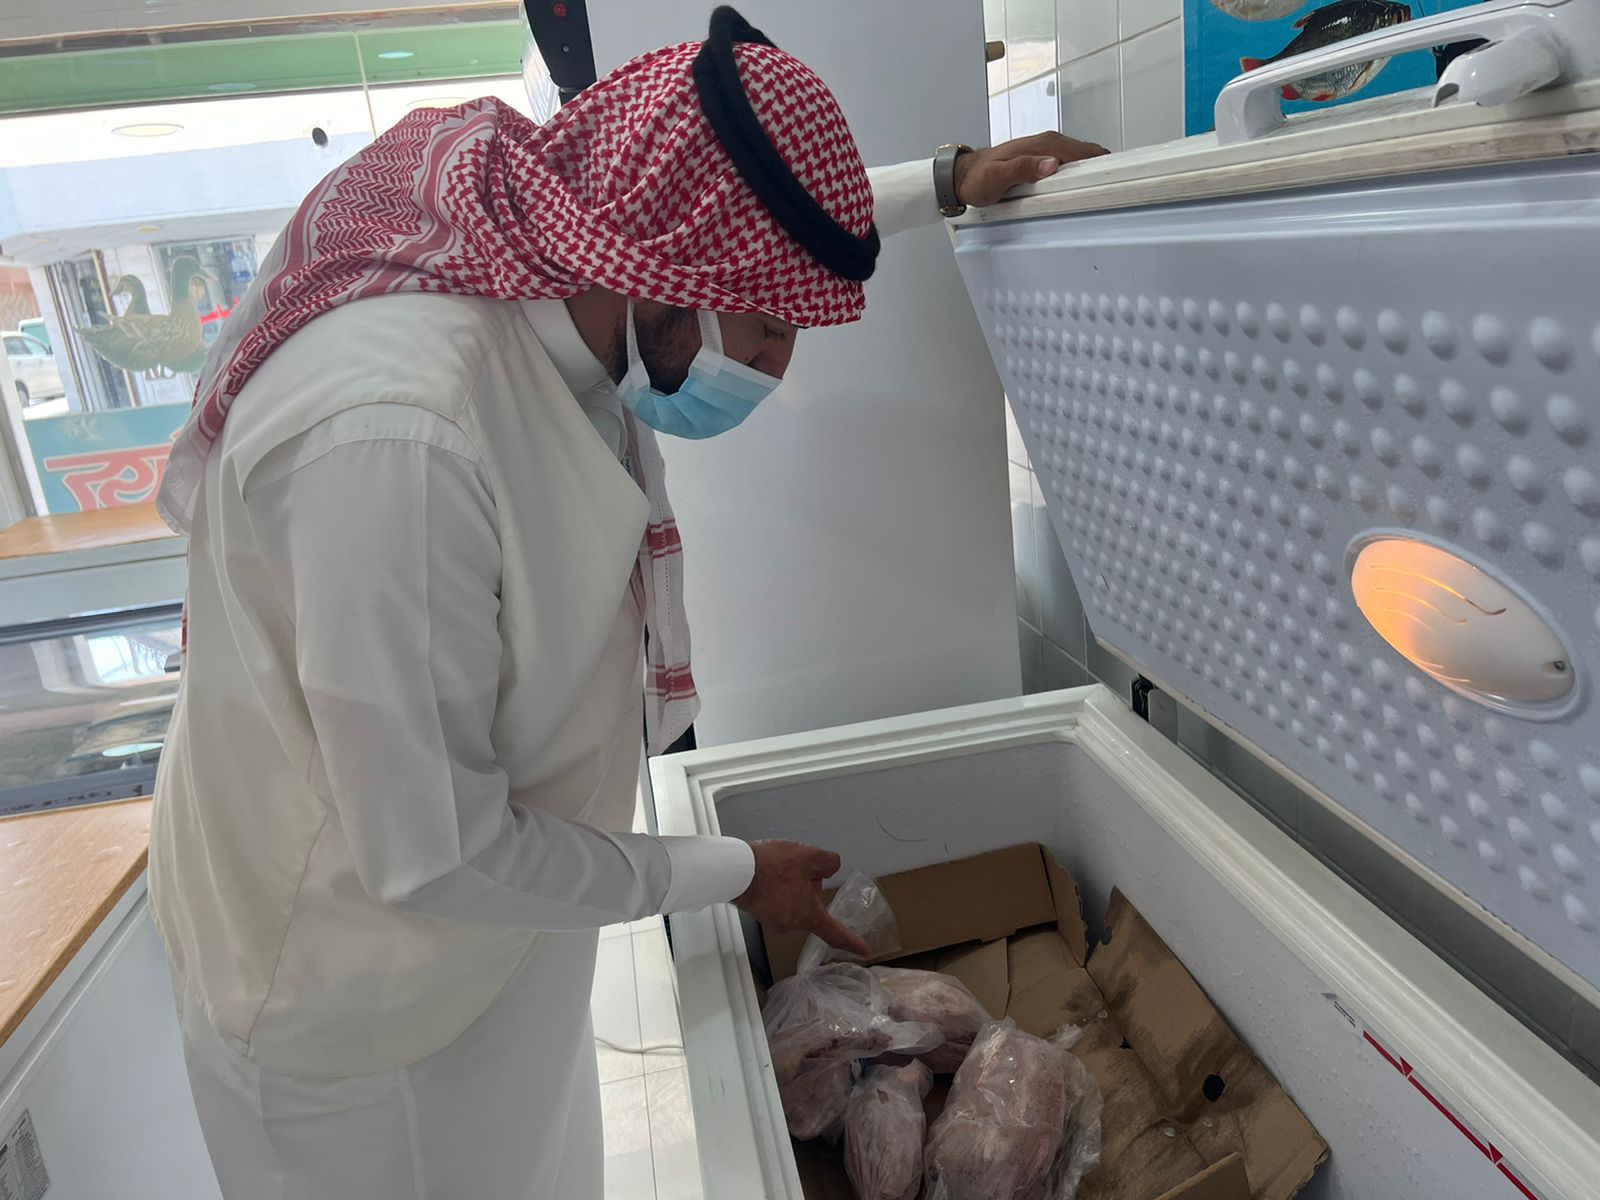 بلدية بقيق تنفذ 132 جولة رقابية على الأسواق ومحلات النفع العام تزامنا مع دخول شهر رمضان المبارك